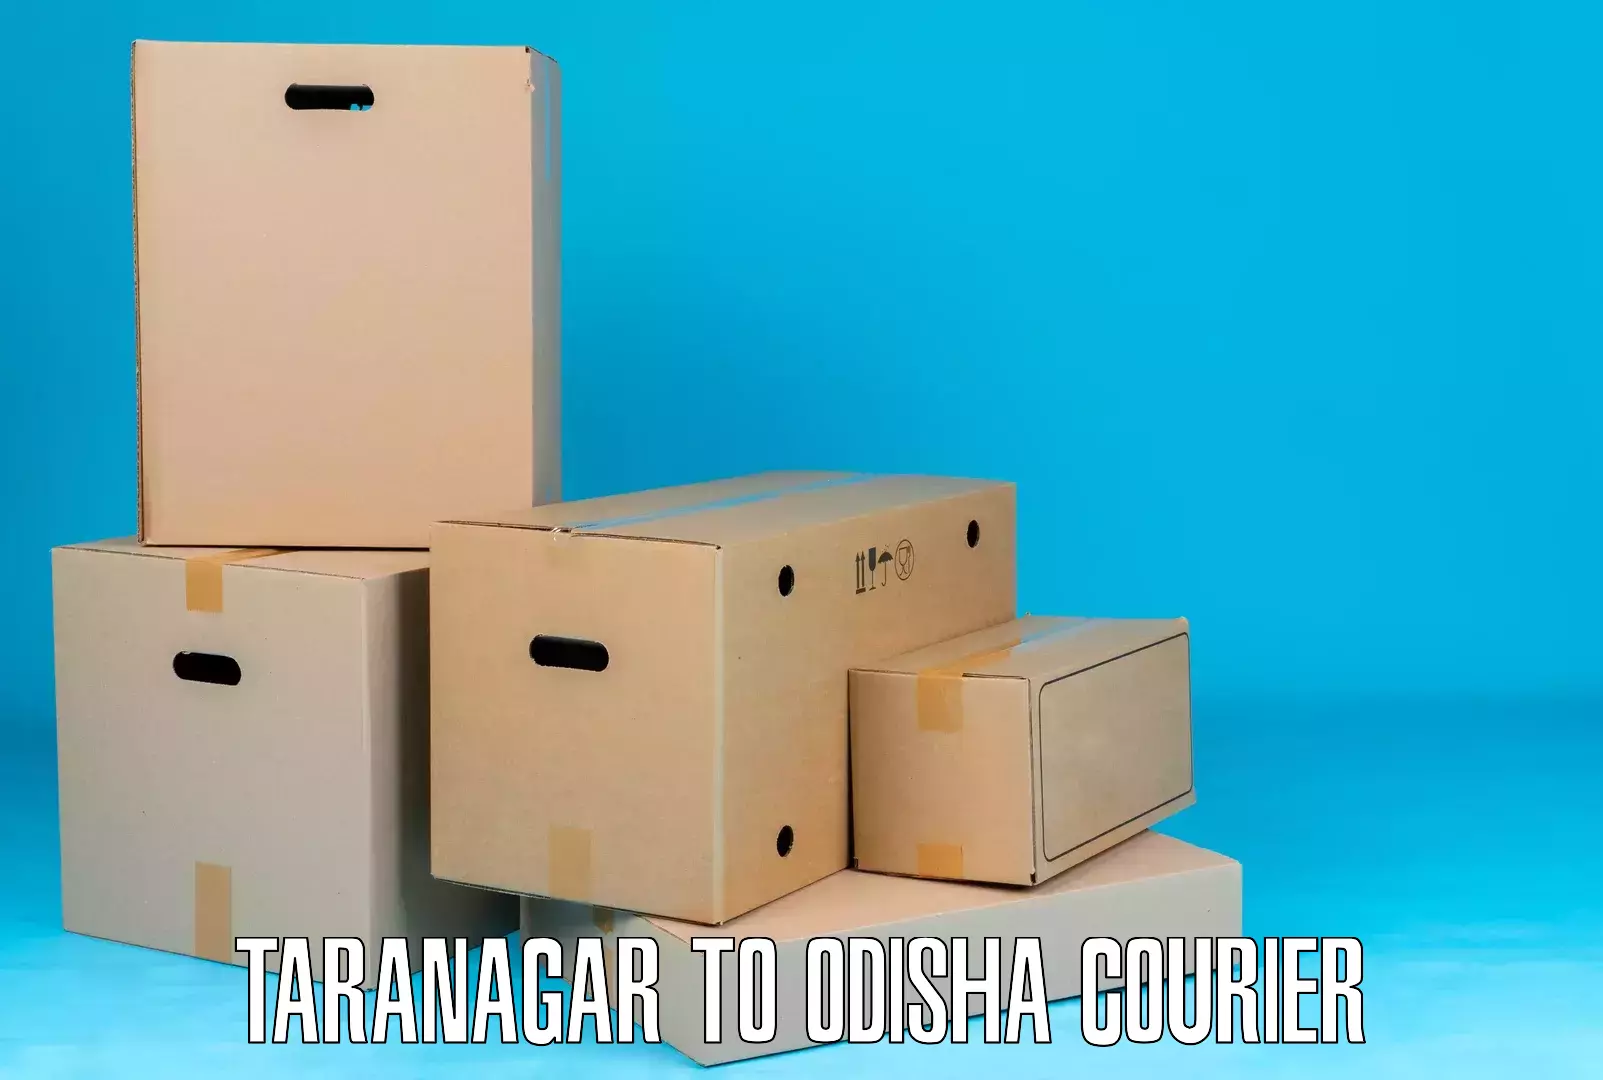 User-friendly delivery service in Taranagar to Daspalla